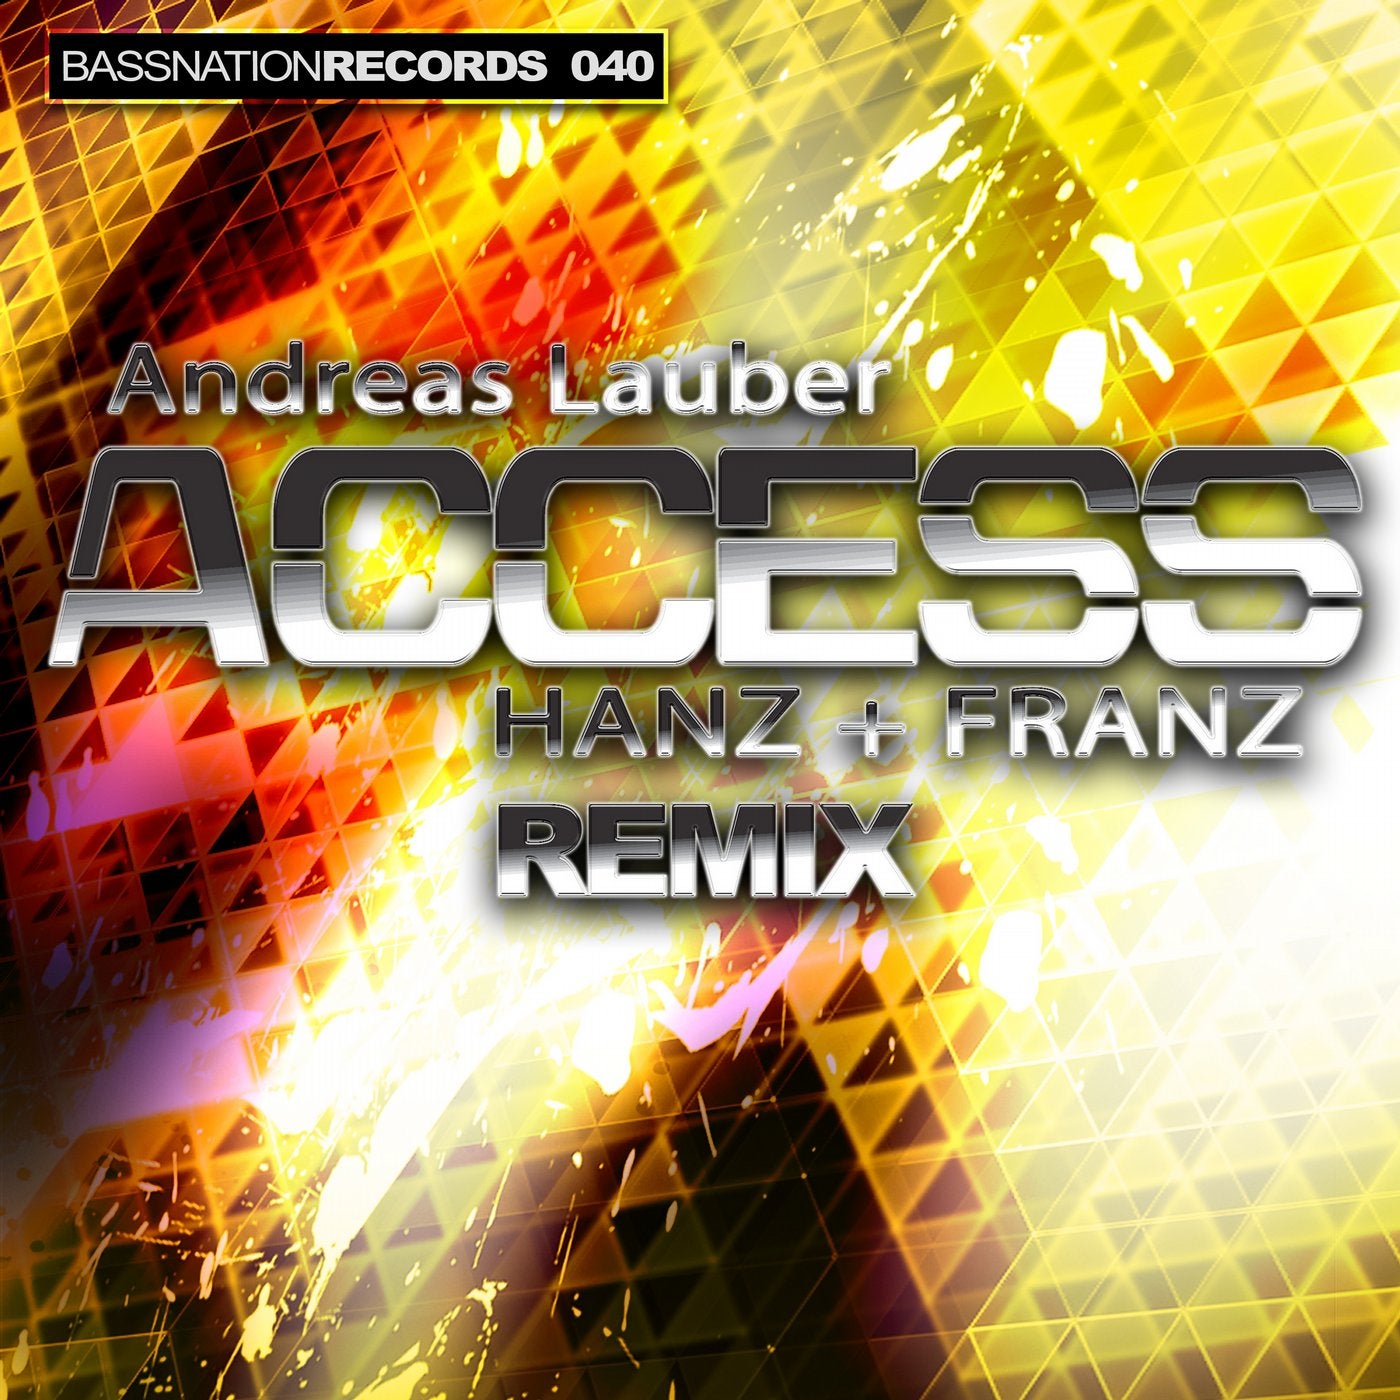 Access(Hanz & Franz Remix)